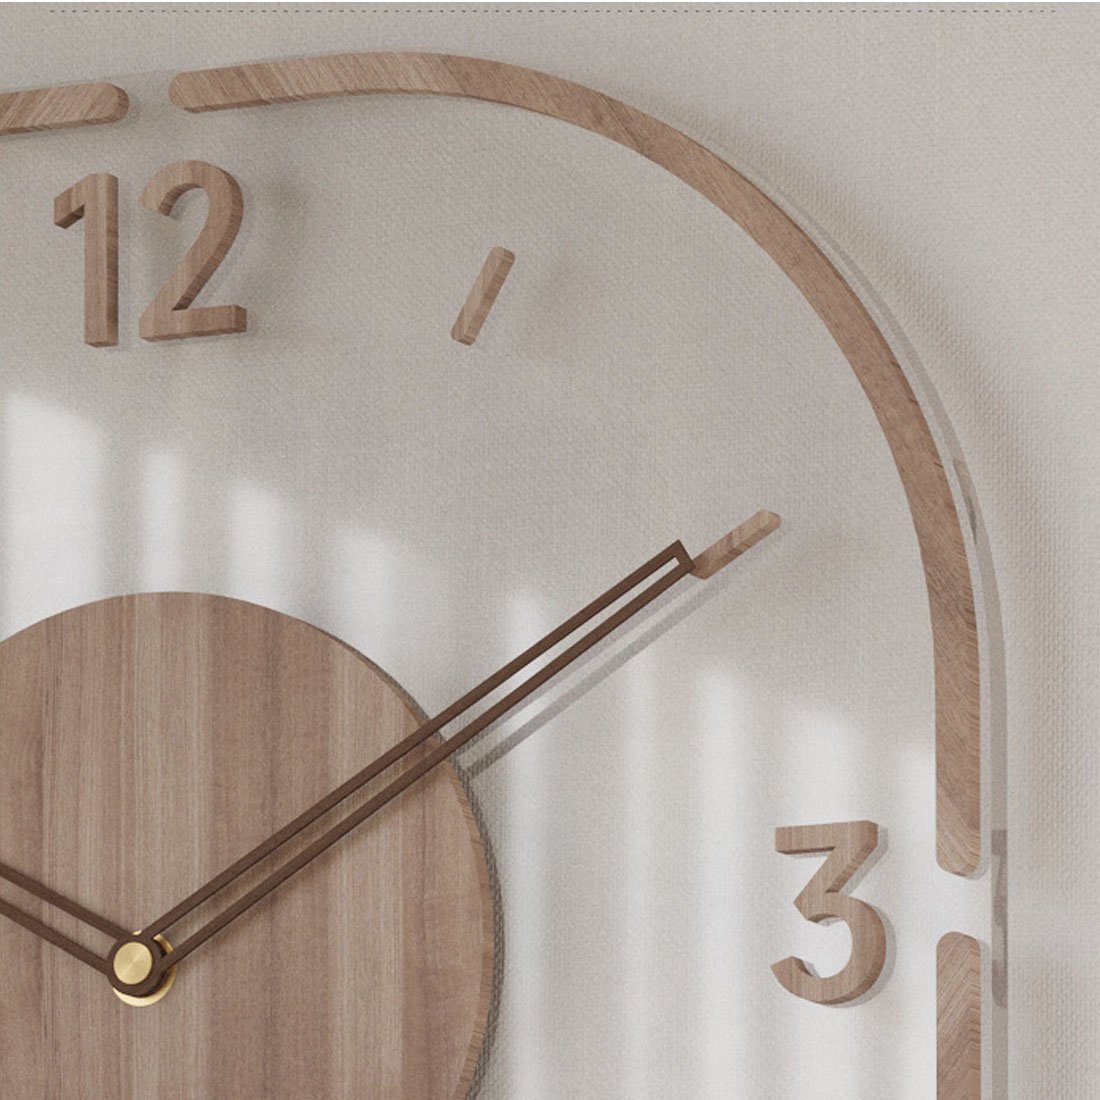 Wanduhr 35cm Wanduhr Uhr, DÖRÖY stille klarem Wanduhr moderne mit Holzrahmen,